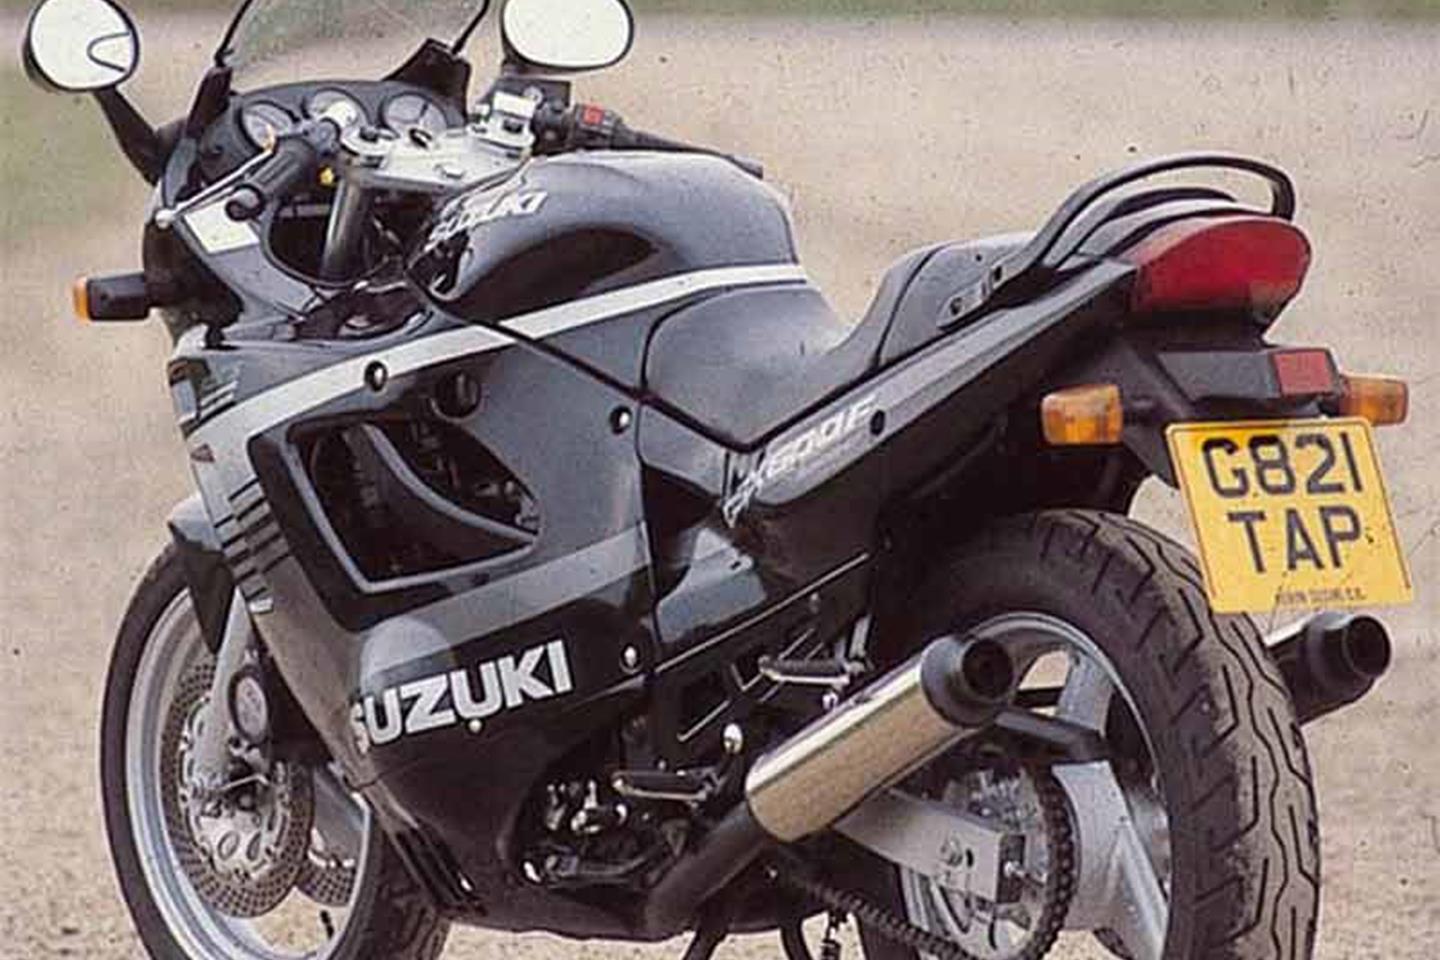 SUZUKI GSX600F (1996-2000) Review | Speed, Specs & Prices